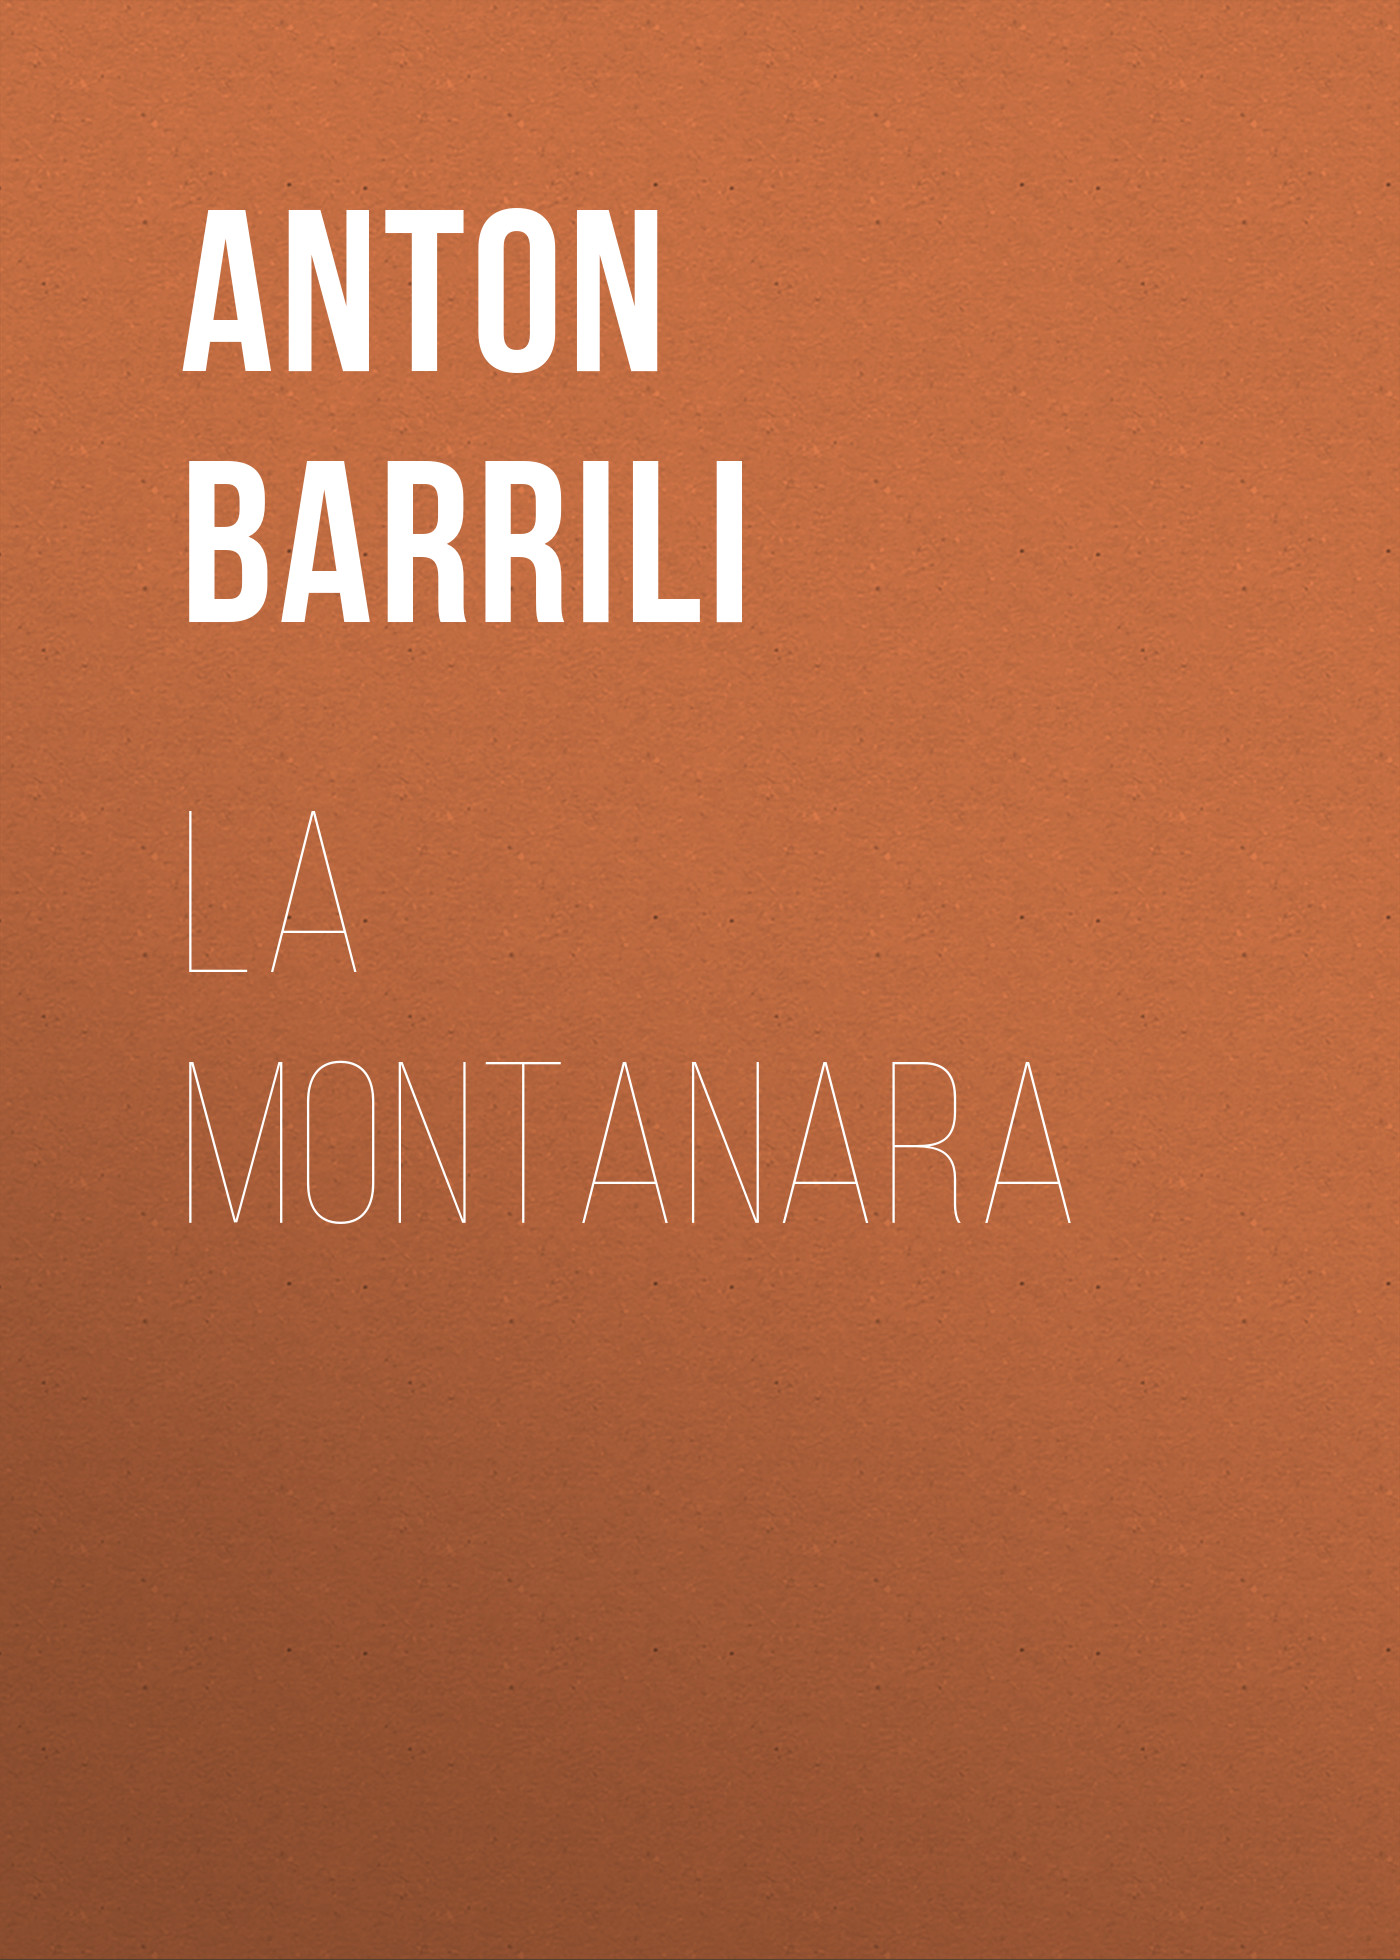 Книга La montanara из серии , созданная Anton Barrili, может относится к жанру Зарубежная старинная литература, Зарубежная классика. Стоимость электронной книги La montanara с идентификатором 24177268 составляет 0.90 руб.